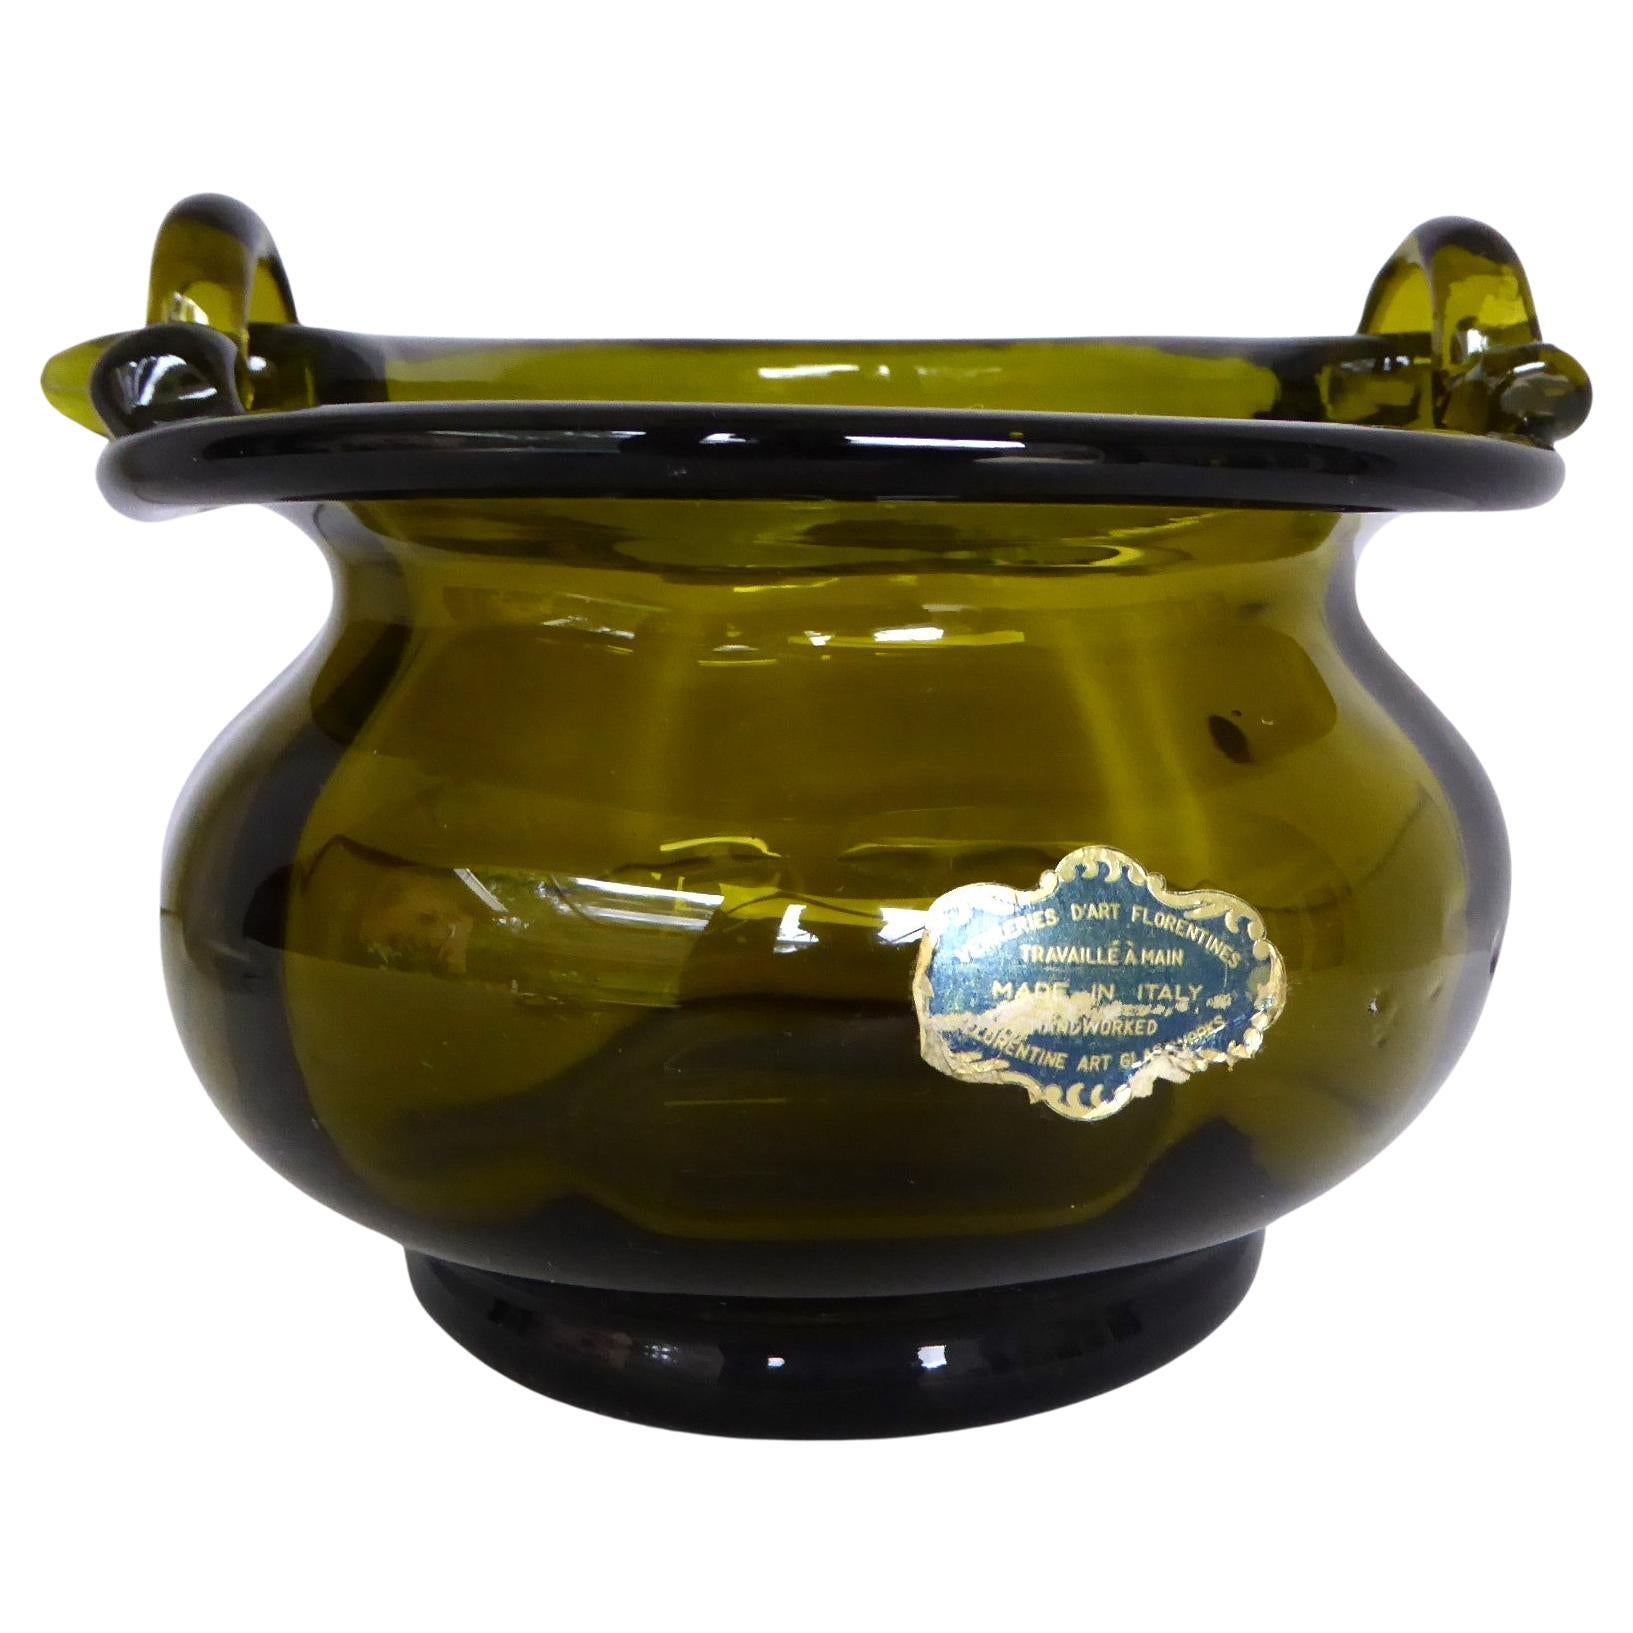 Italienischer Mid Century handgefertigter olivgrüner Glaskorb mit Henkel, hergestellt von Florentine Art Glassworks in den 1960er Jahren.  Das Gefäß hat einen gewellten Körper und der Henkel ist durch 2 Glashalter am Rand des Körpers befestigt.  